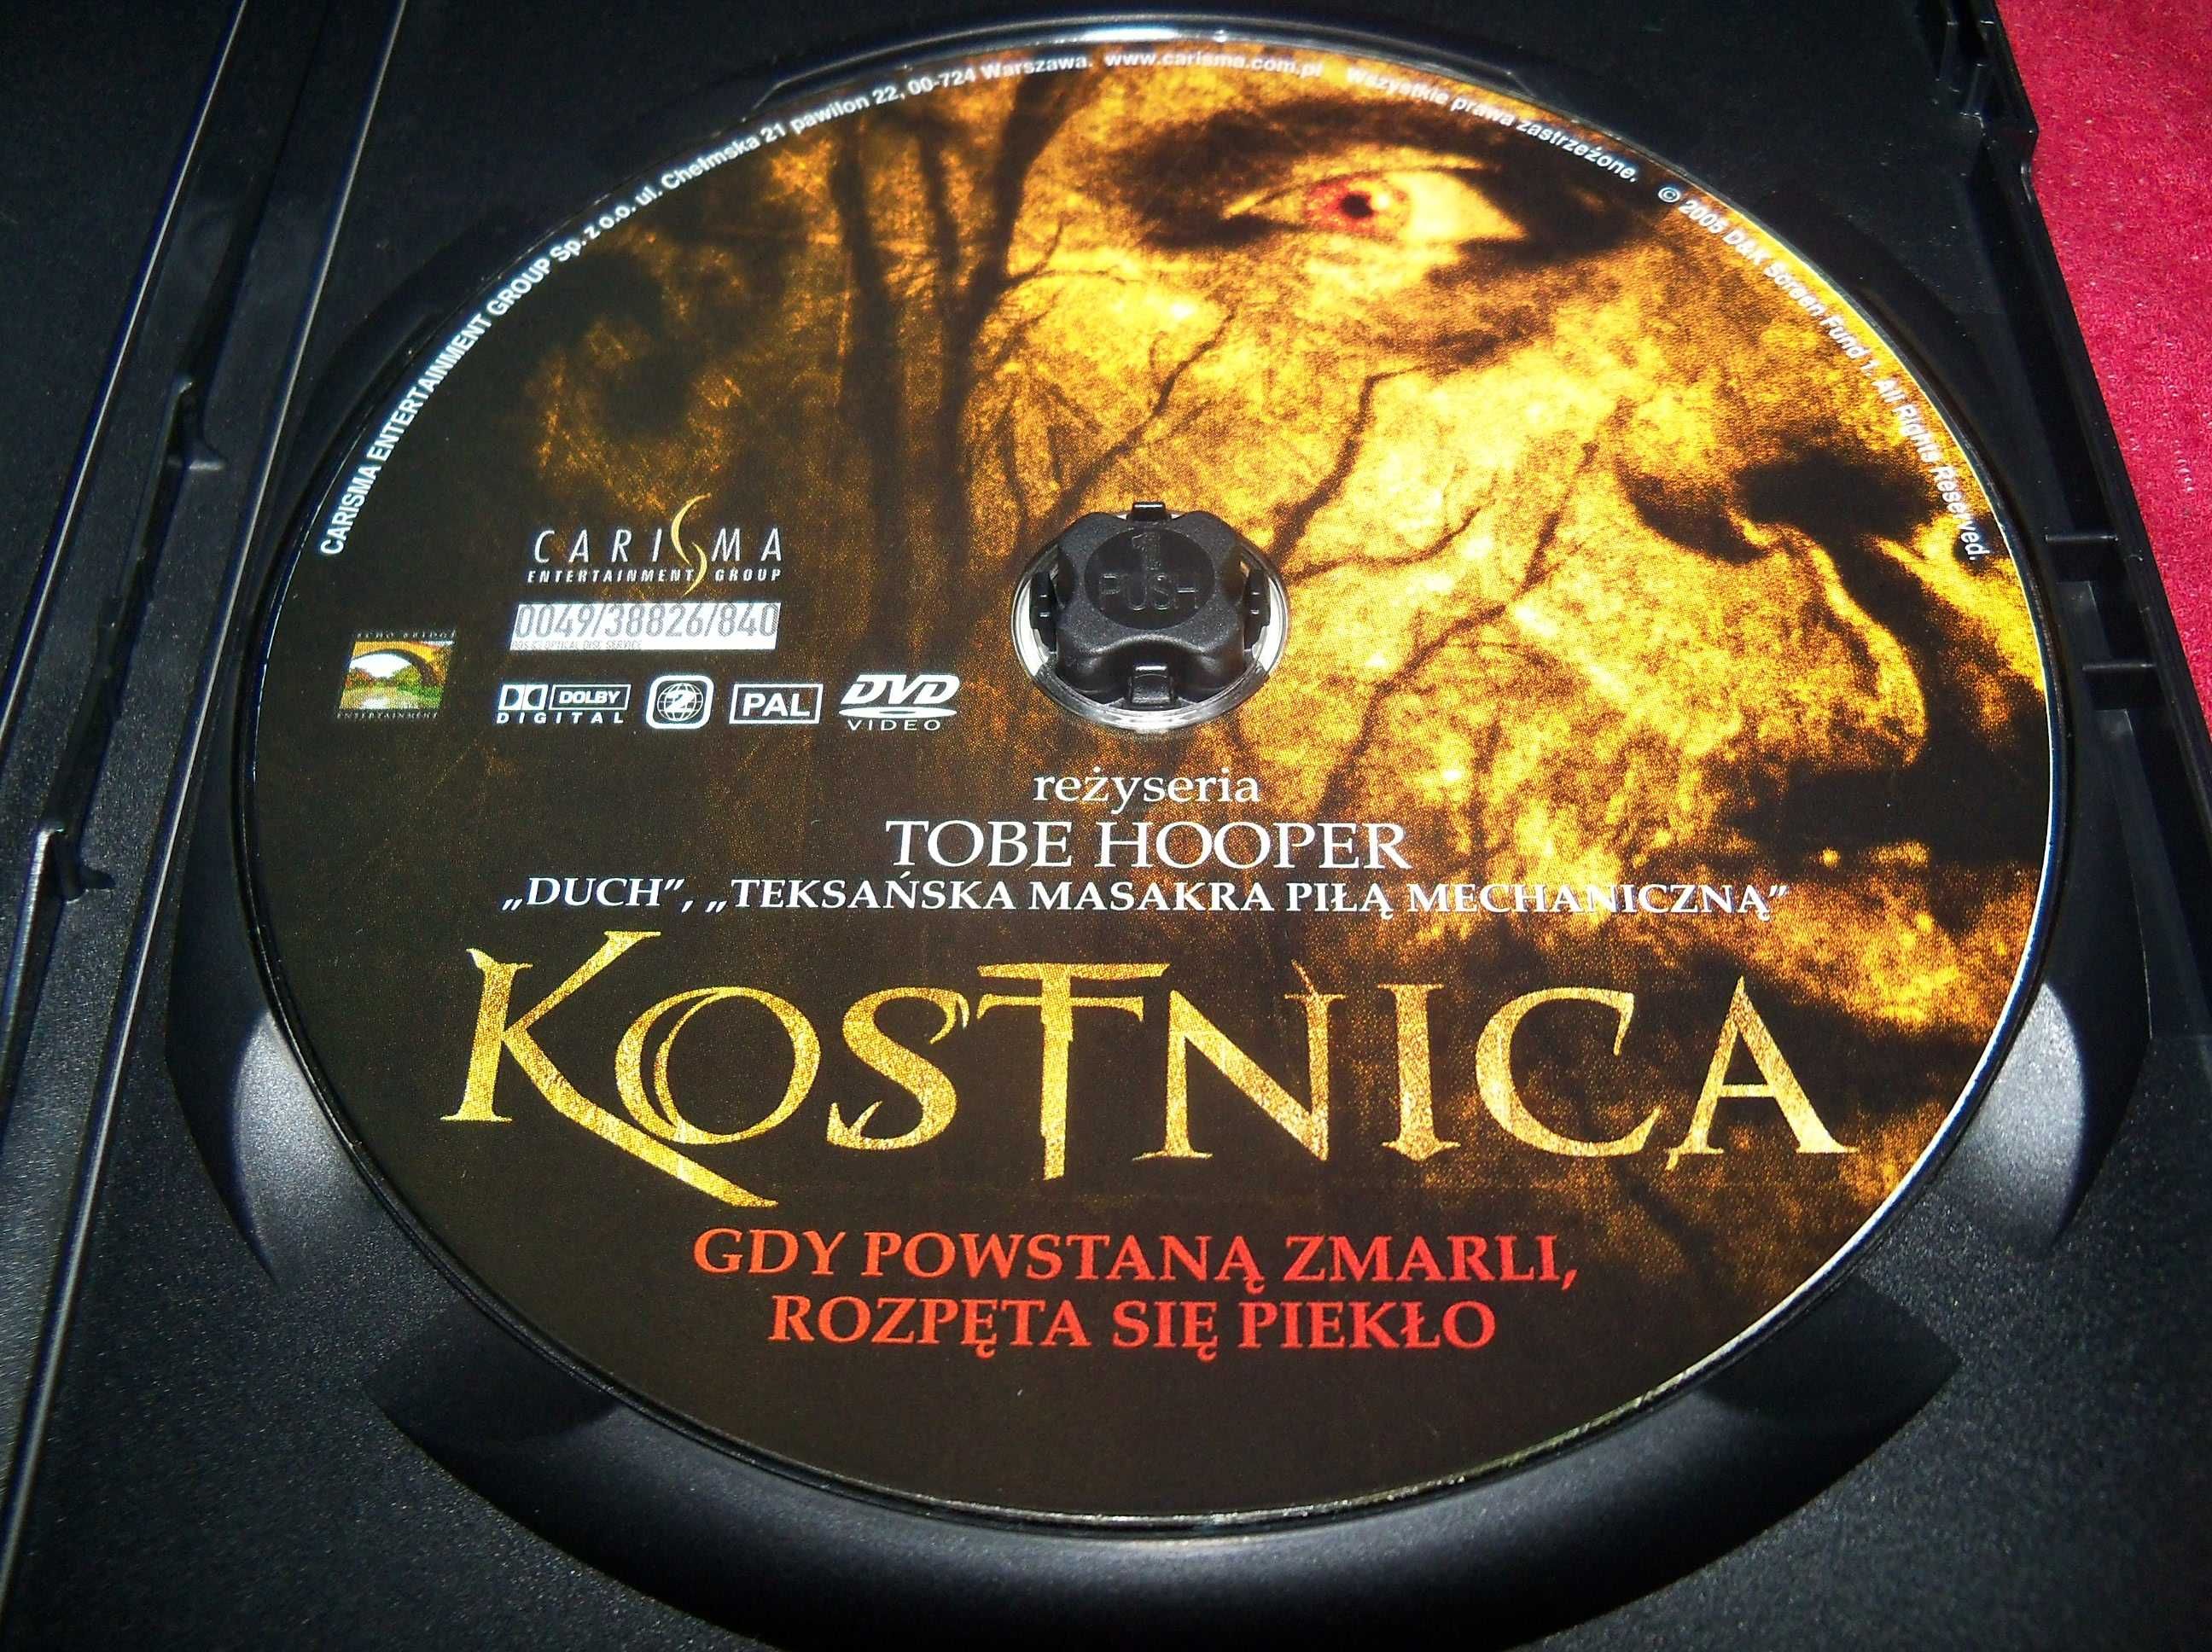 Film DVD Kostnica Mortuary horror